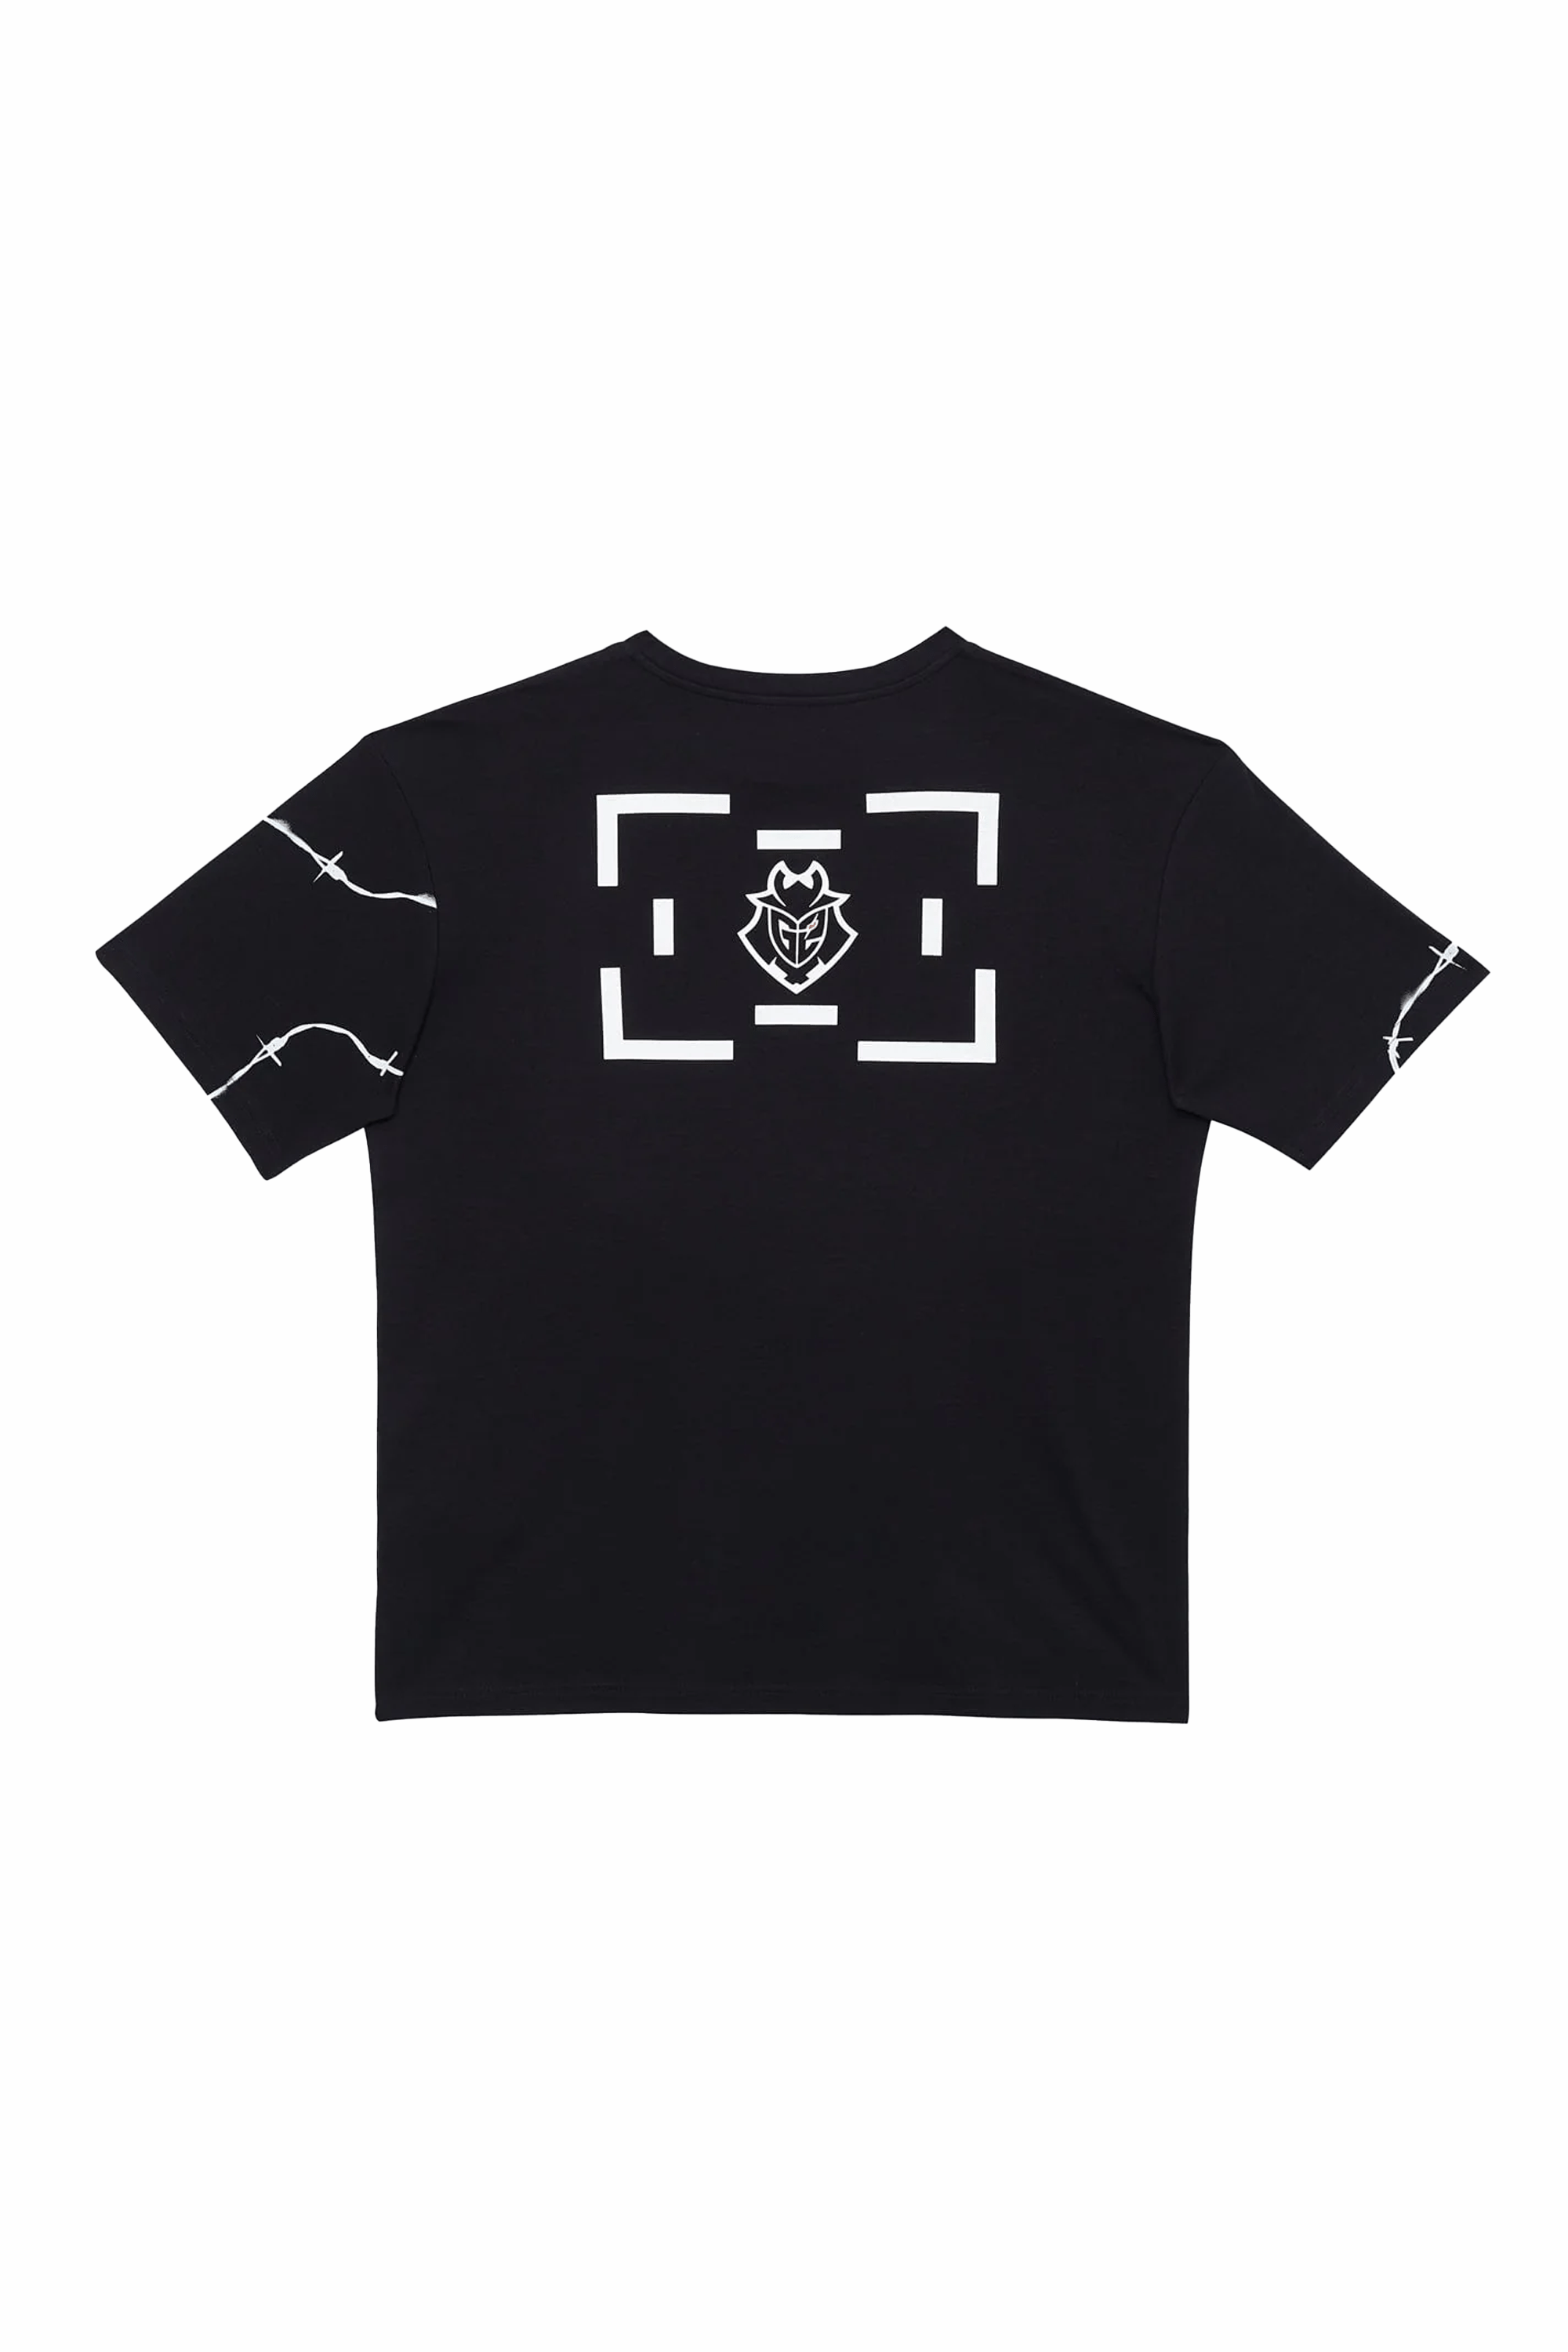 G2 x LB Black T-Shirt – NA - G2 Esports